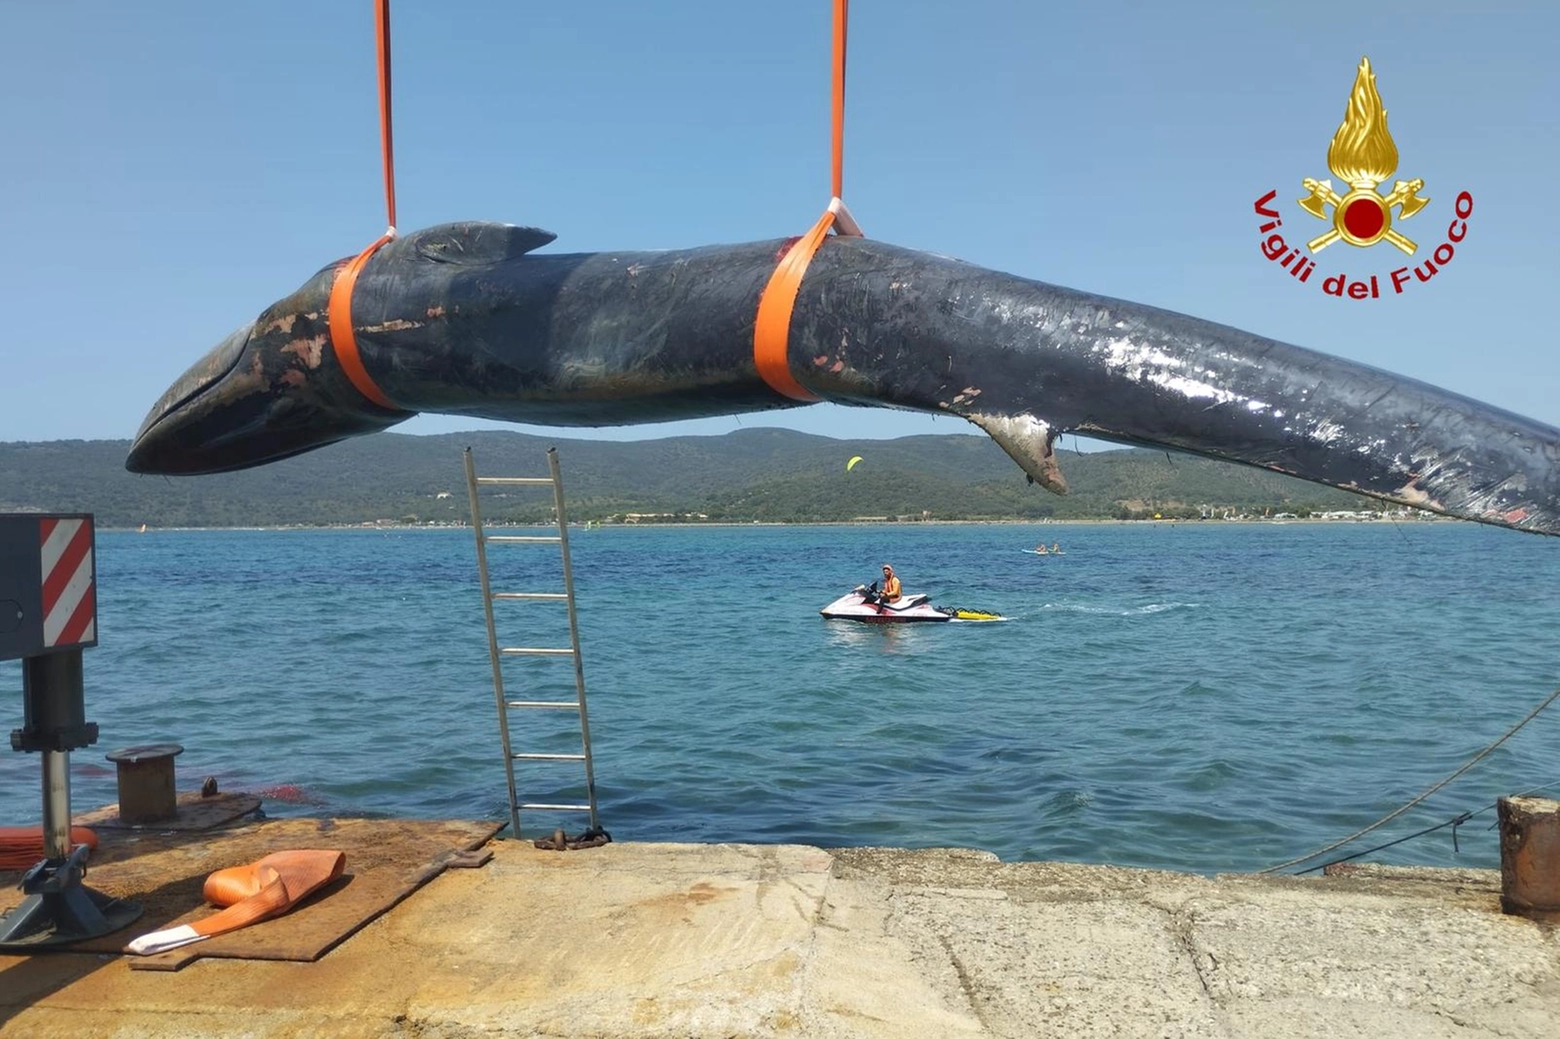 La carcassa della balena sul molo di Talamonaccio, nella zona del porto di Talamone. Il recupero ha impegnato vigili del fuoco, Guardia Costiera e studiosi dell'università di Padova